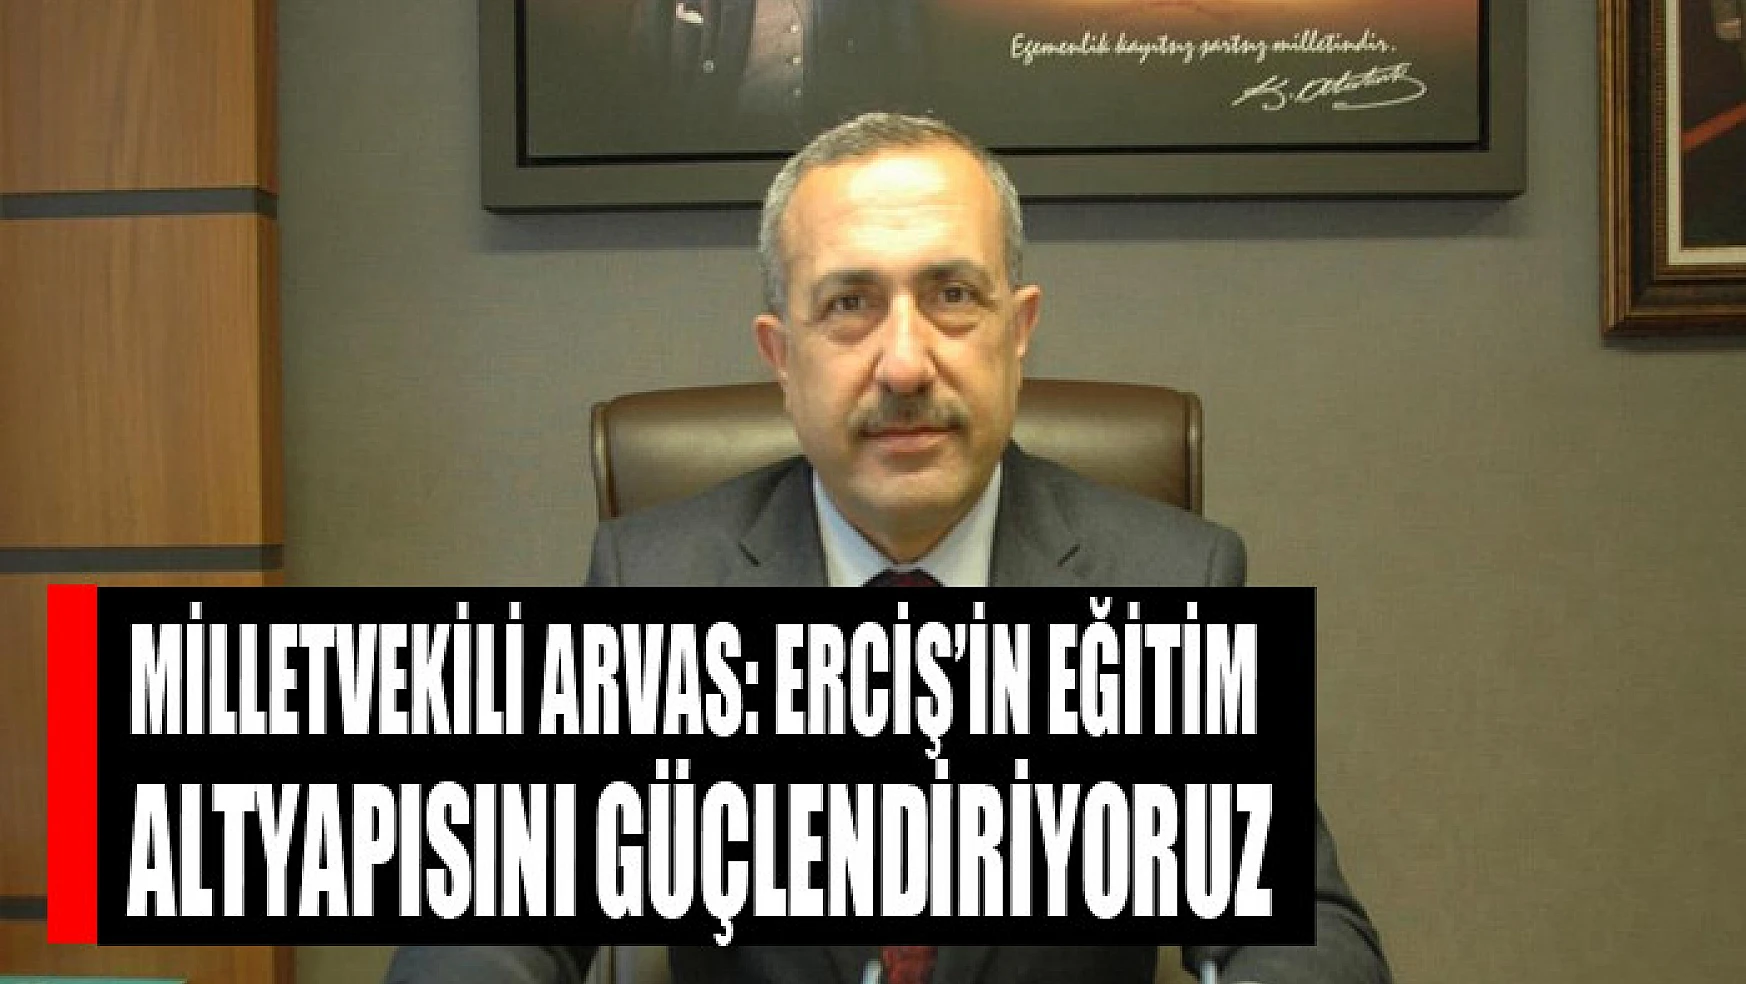 Milletvekili Arvas: Erciş'in eğitim altyapısını güçlendiriyoruz